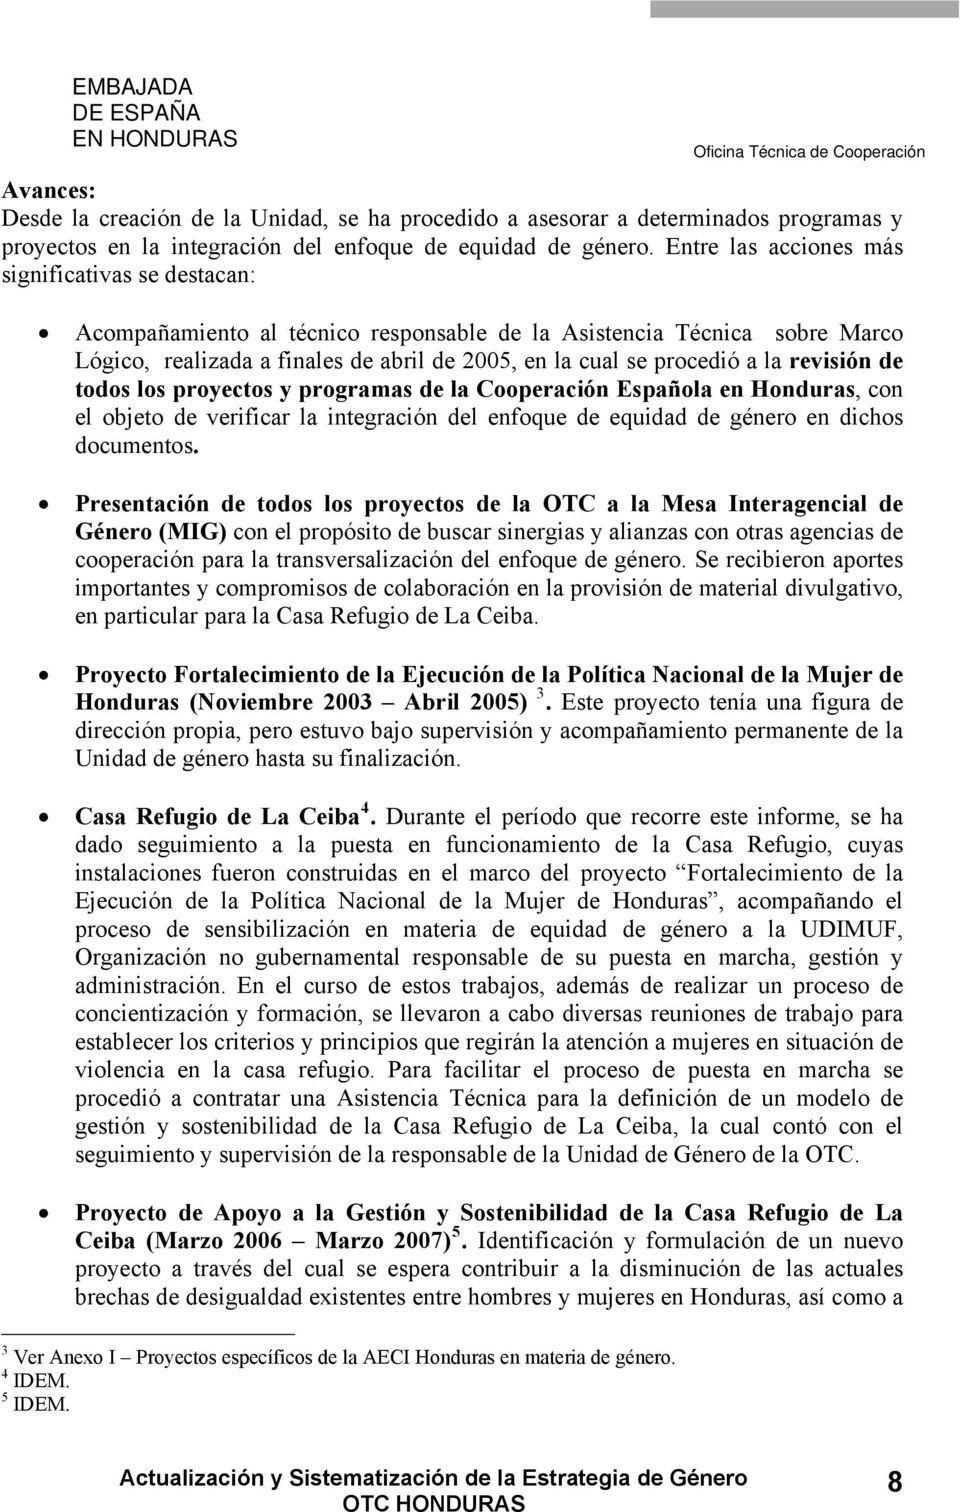 revisión de todos los proyectos y programas de la Cooperación Española en Honduras, con el objeto de verificar la integración del enfoque de equidad de género en dichos documentos.